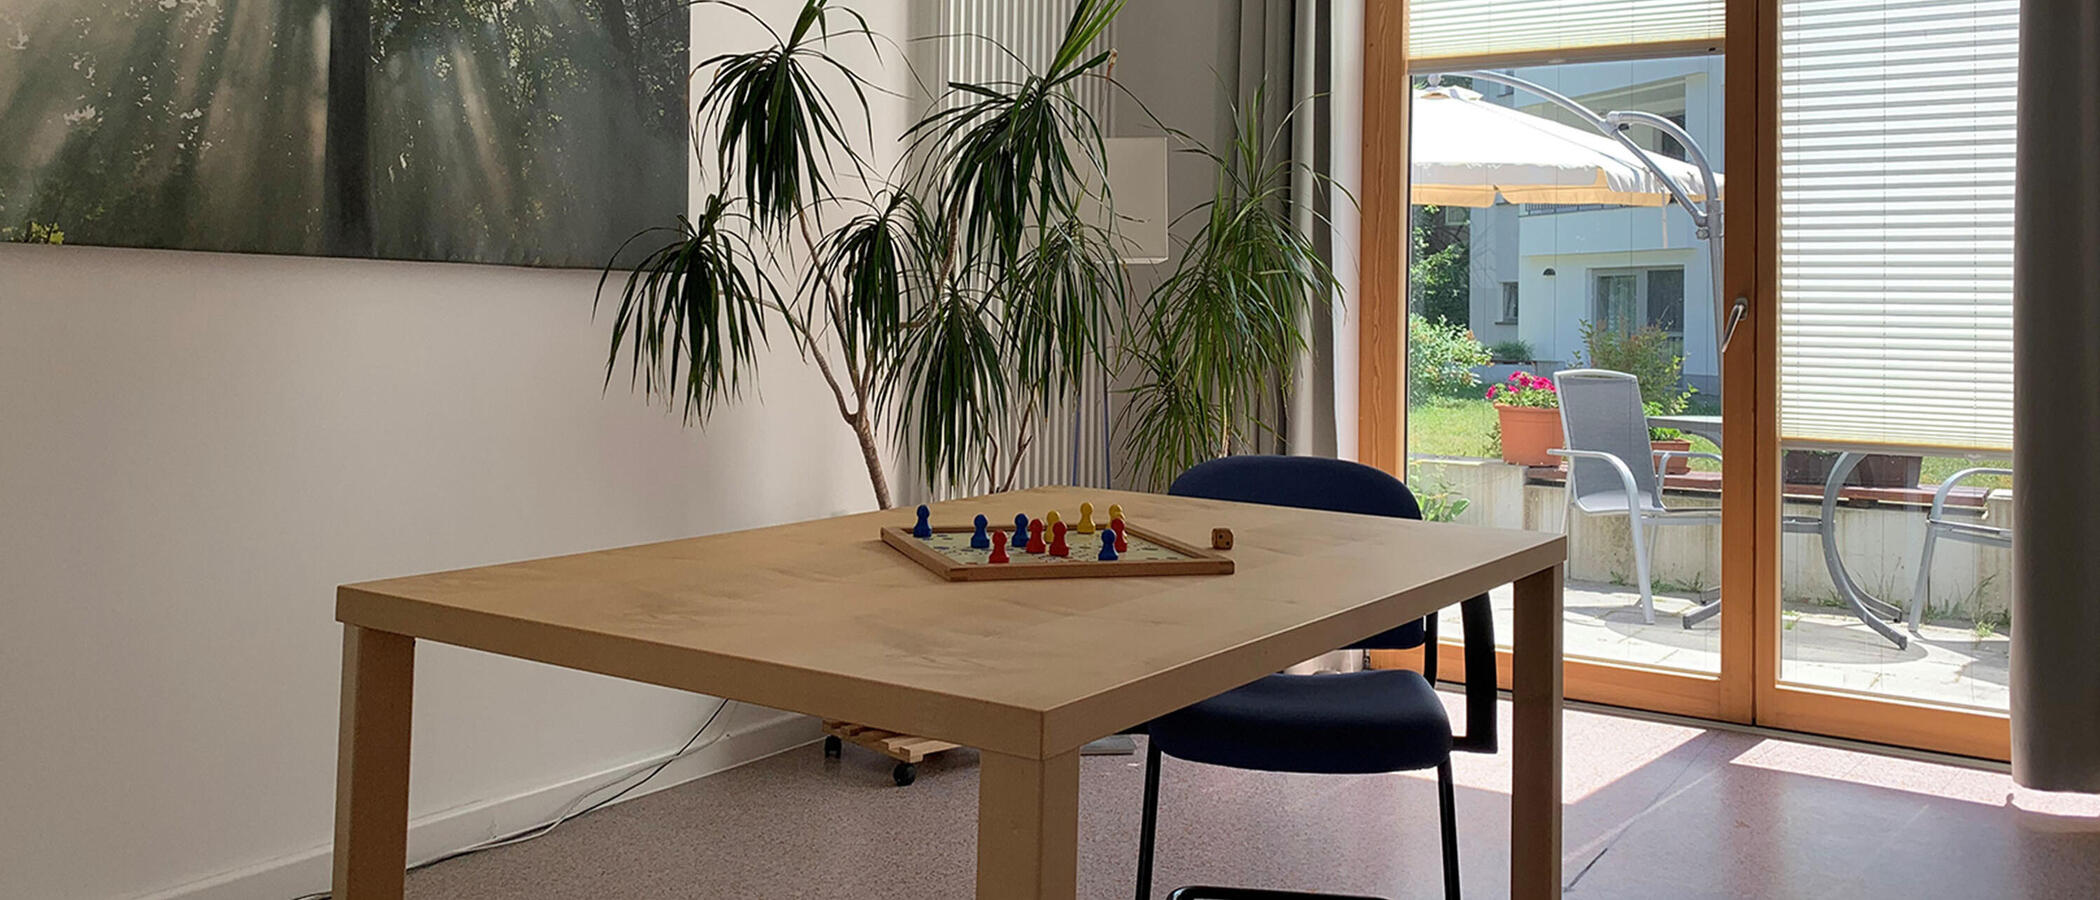 Räumlichkeit des BFBTS: In der Mitte des Raumes steht ein Tisch mit einer Pflanze darauf.